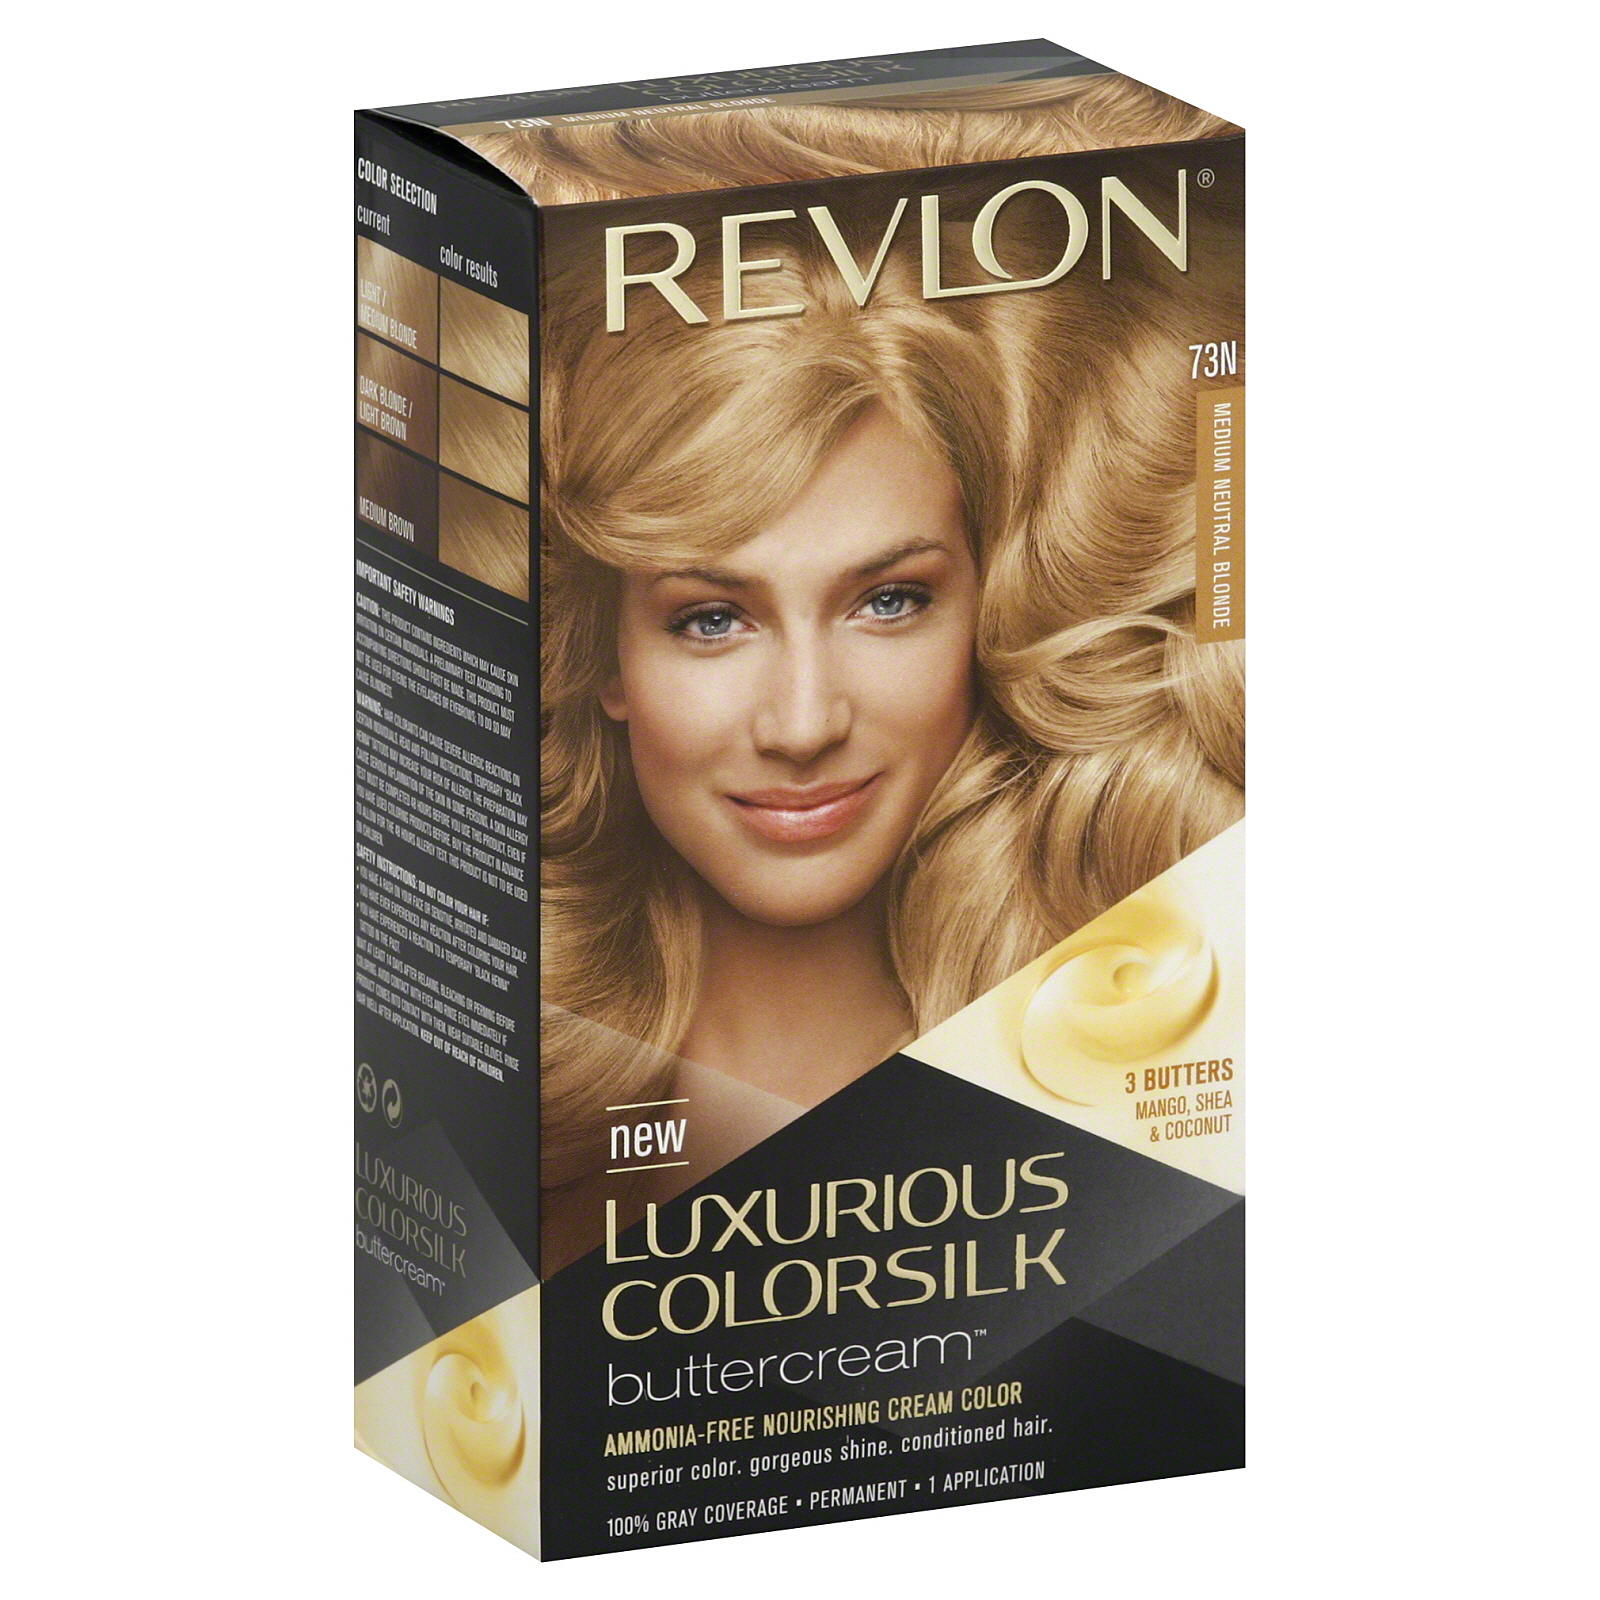 Revlon Luxurious ColorSilk Buttercream Permanent Hair Color